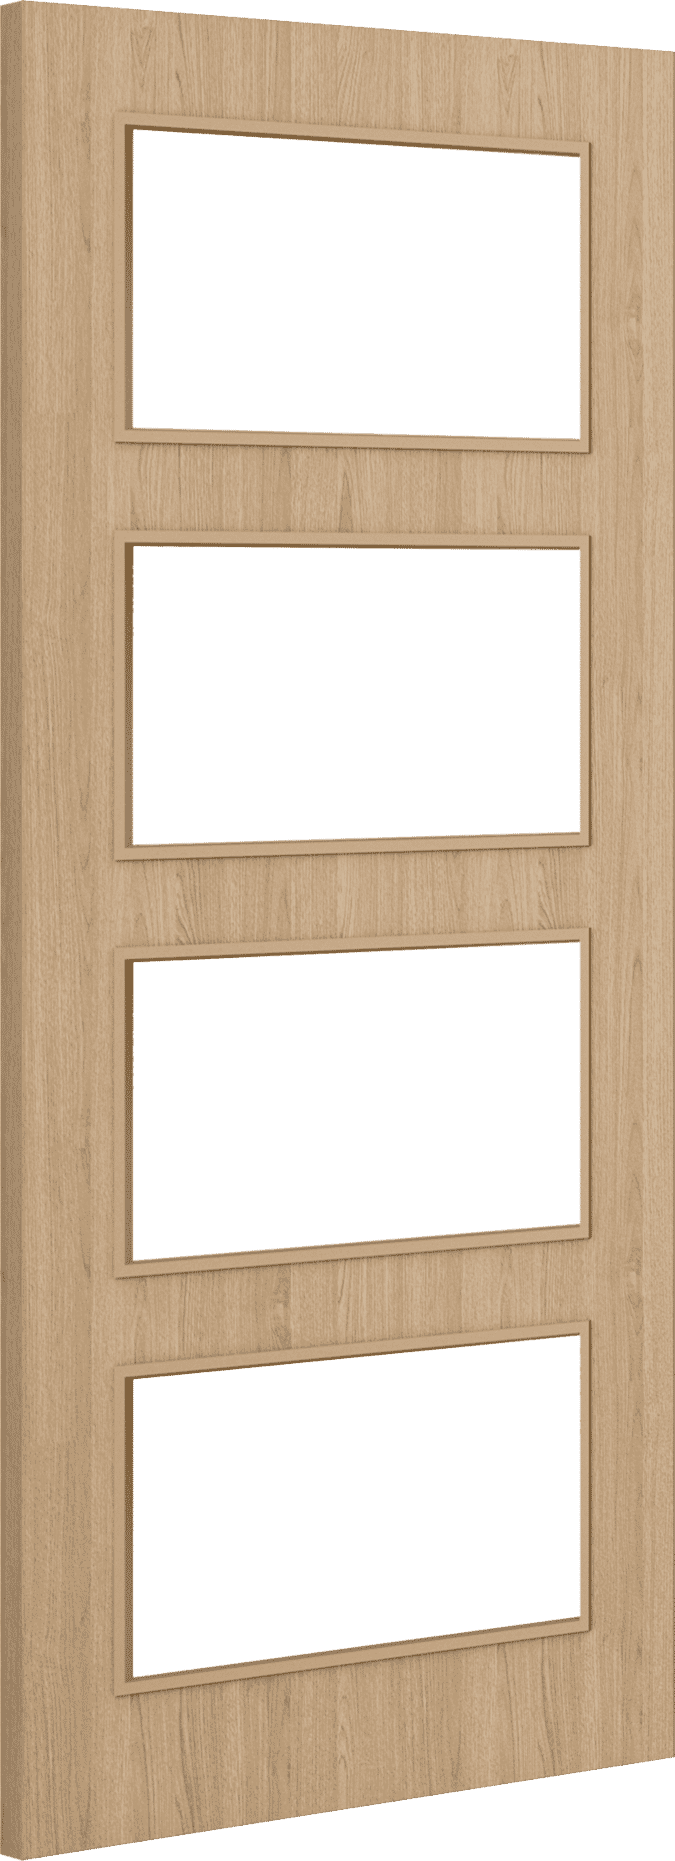 1981mm x 762mm x 44mm (30") Architectural Oak 04 Clear Glazed - Prefinished FD30 Fire Door Blank